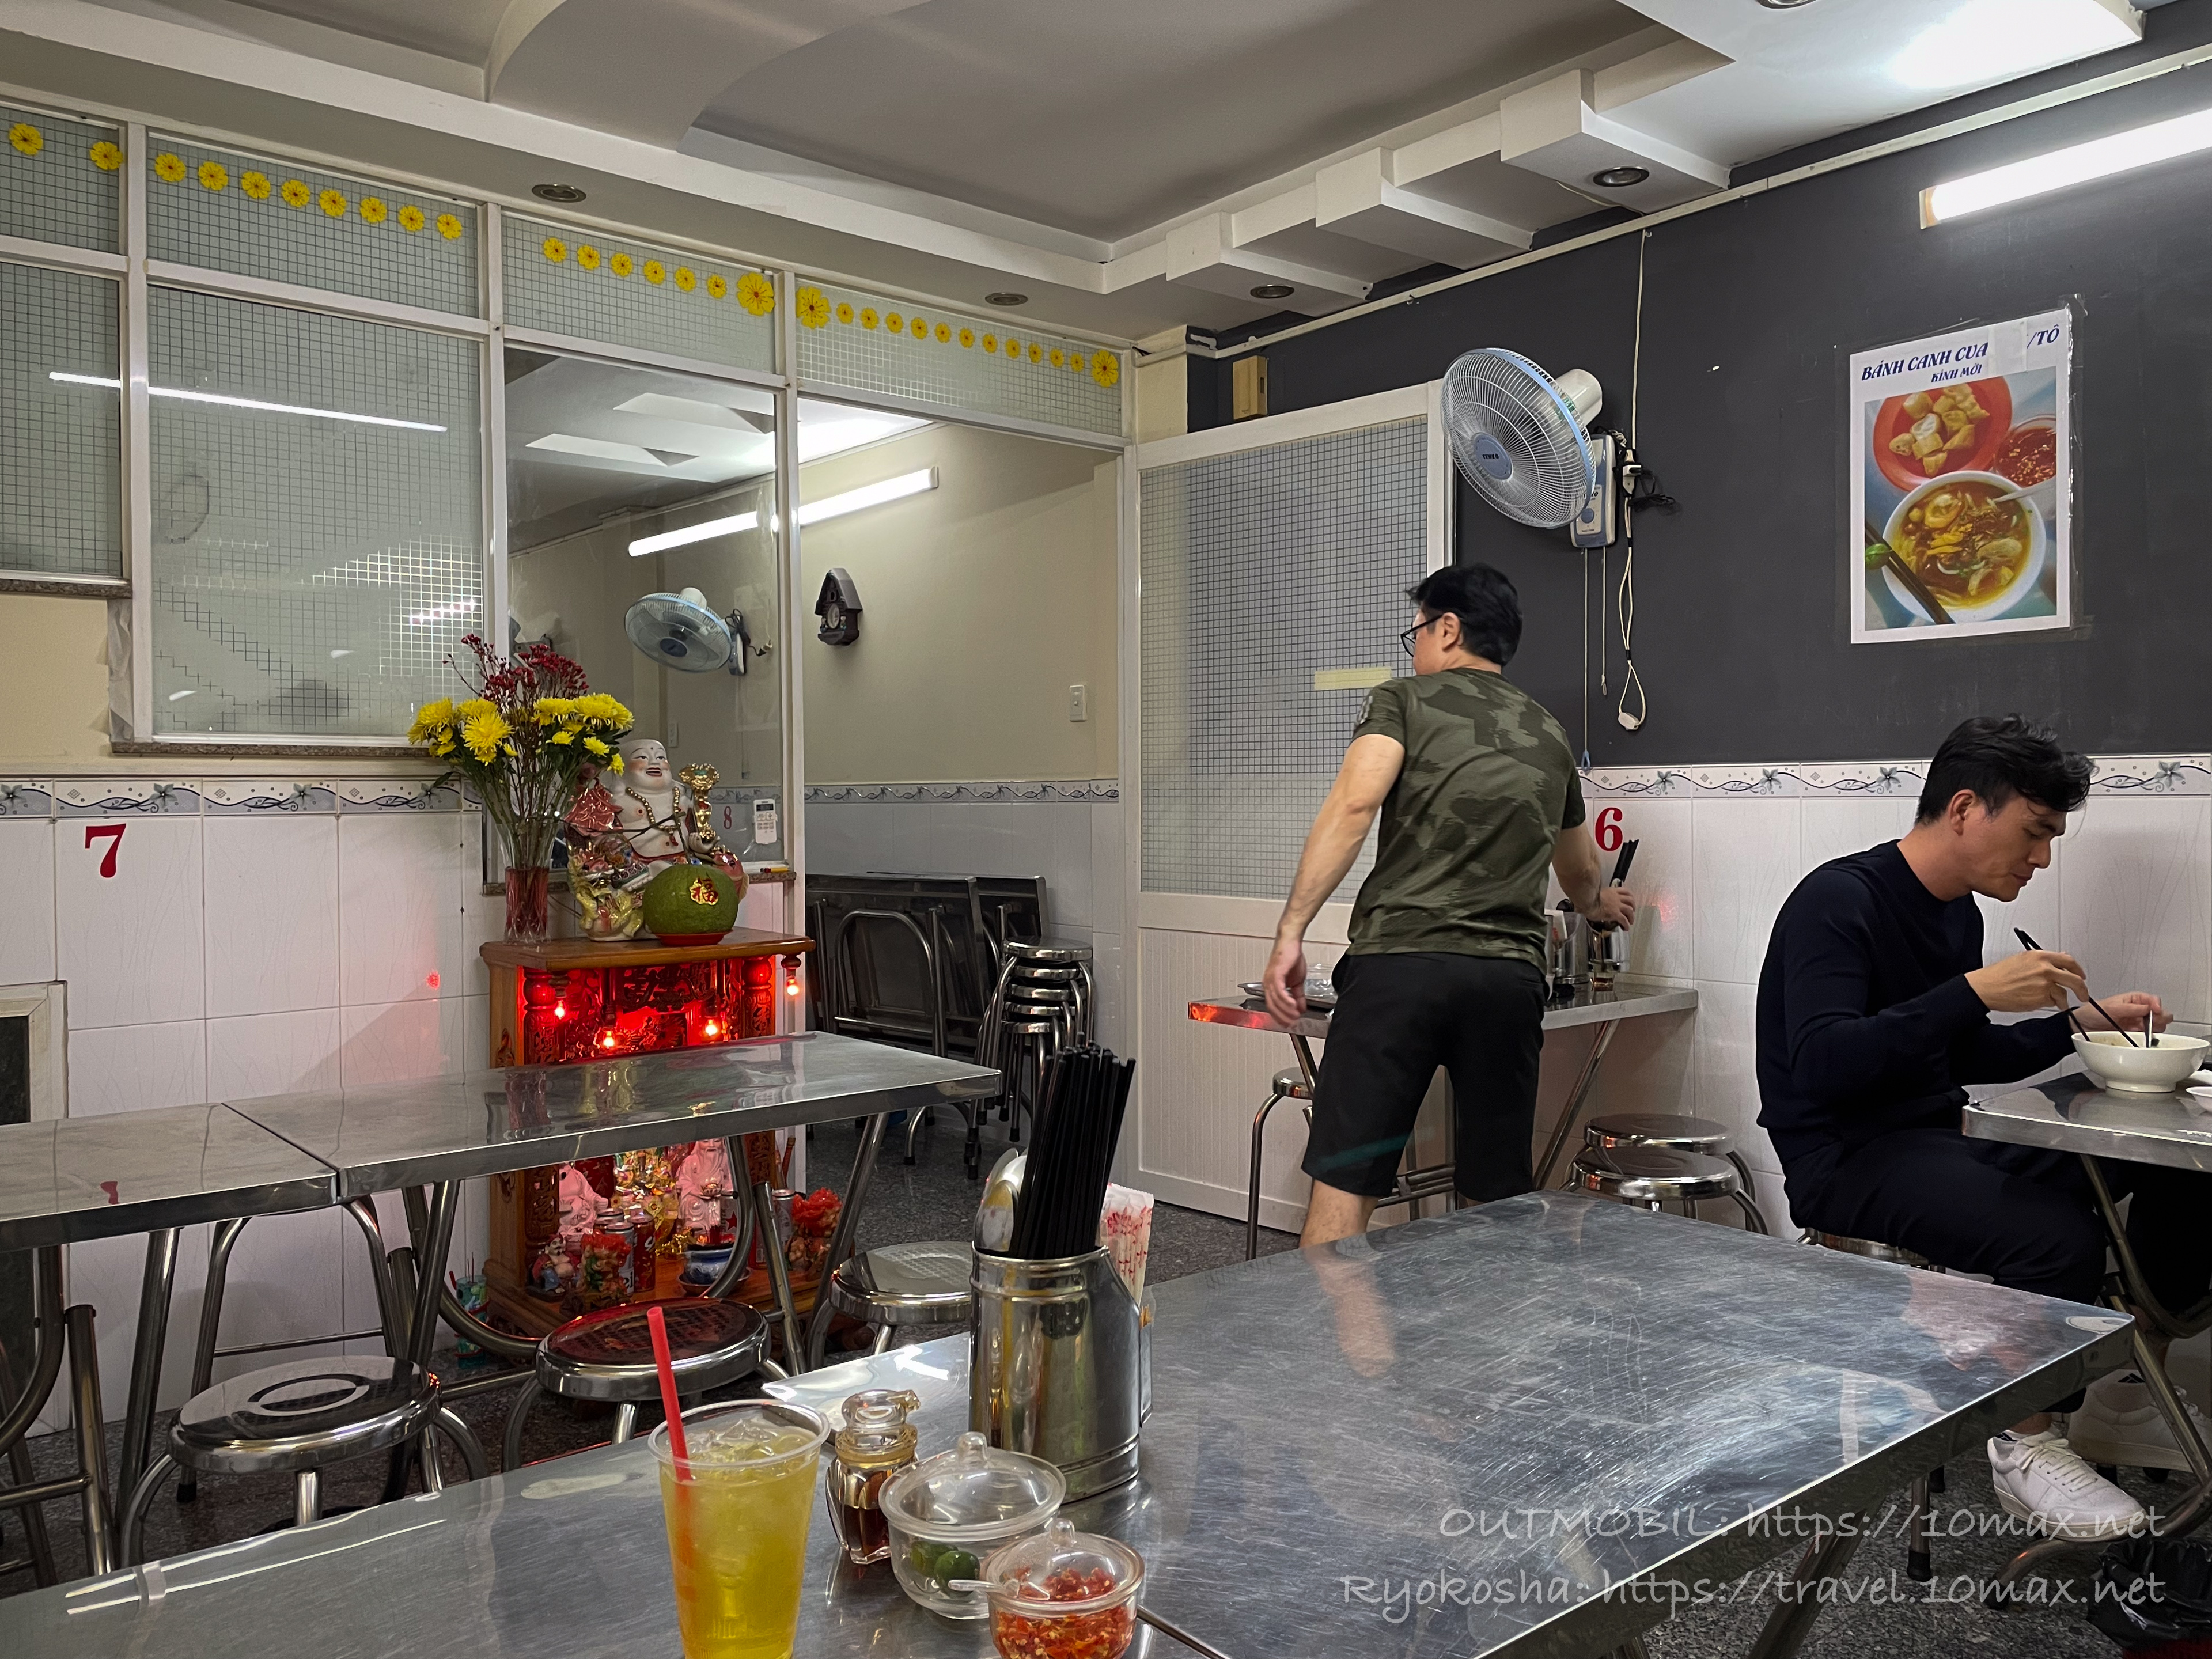 ホーチミン1区の蟹うどんの名店「Bánh Canh Cua」の店内